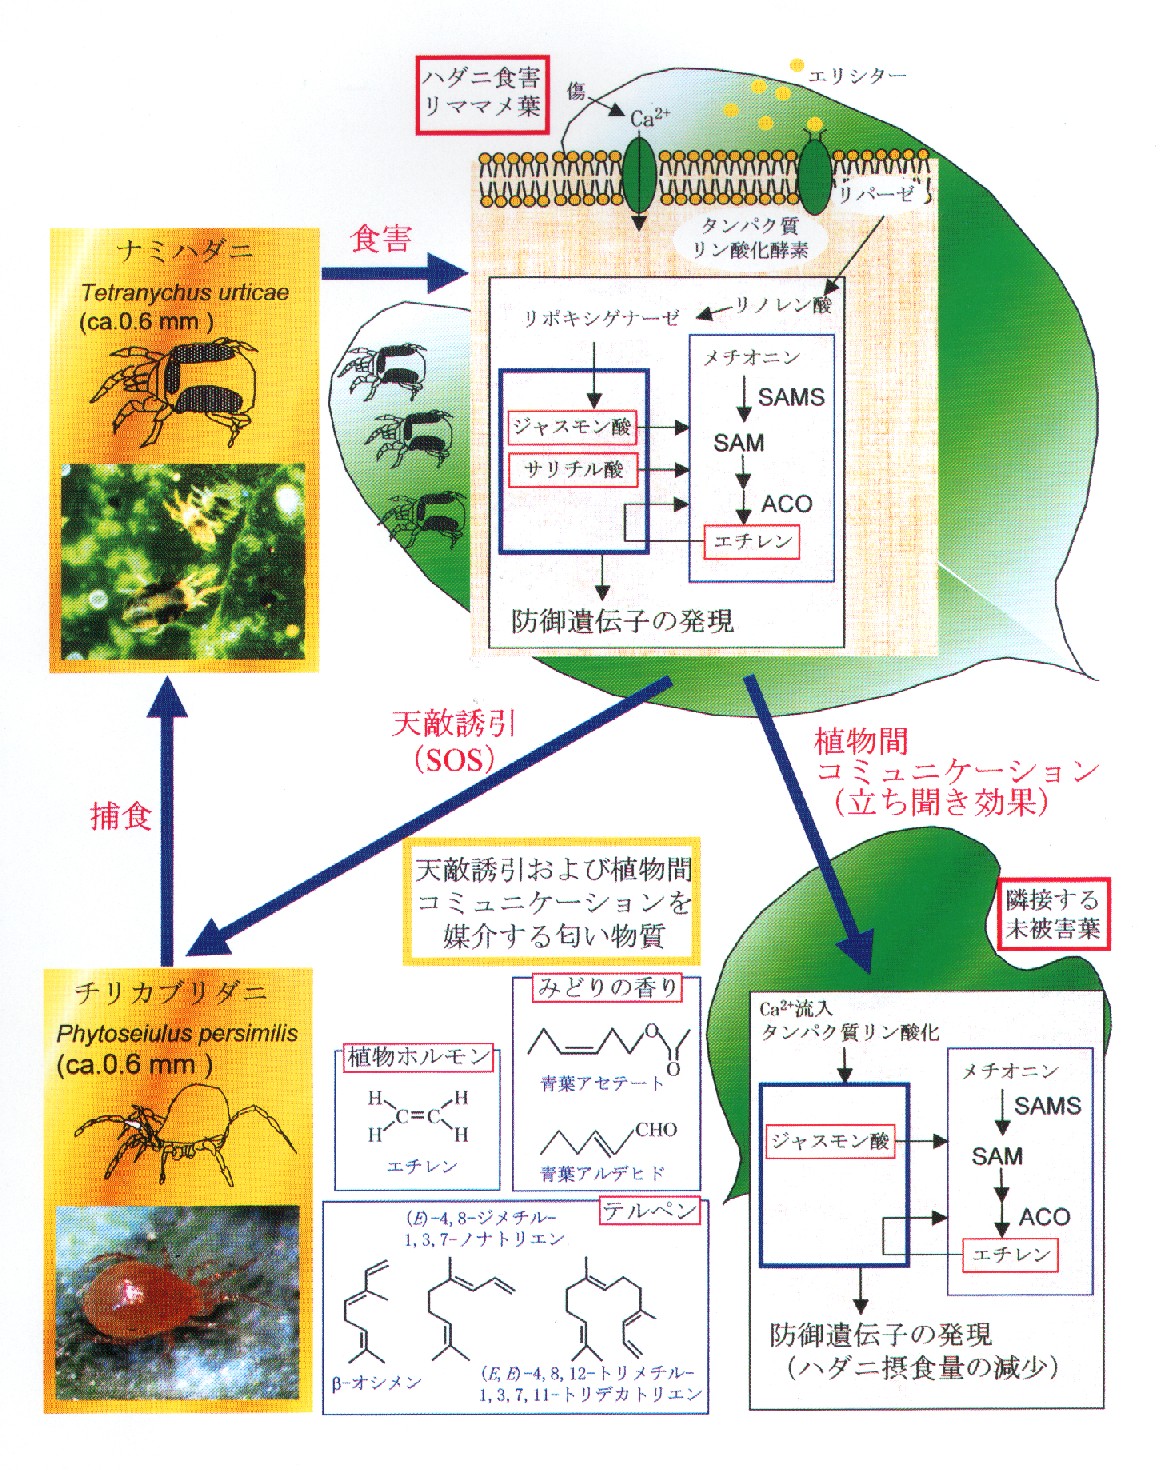 植物の情報シグナルによる植物 - 害虫 - 天敵三者間の免疫的相互作用(生態免疫系)に関する基礎的研究